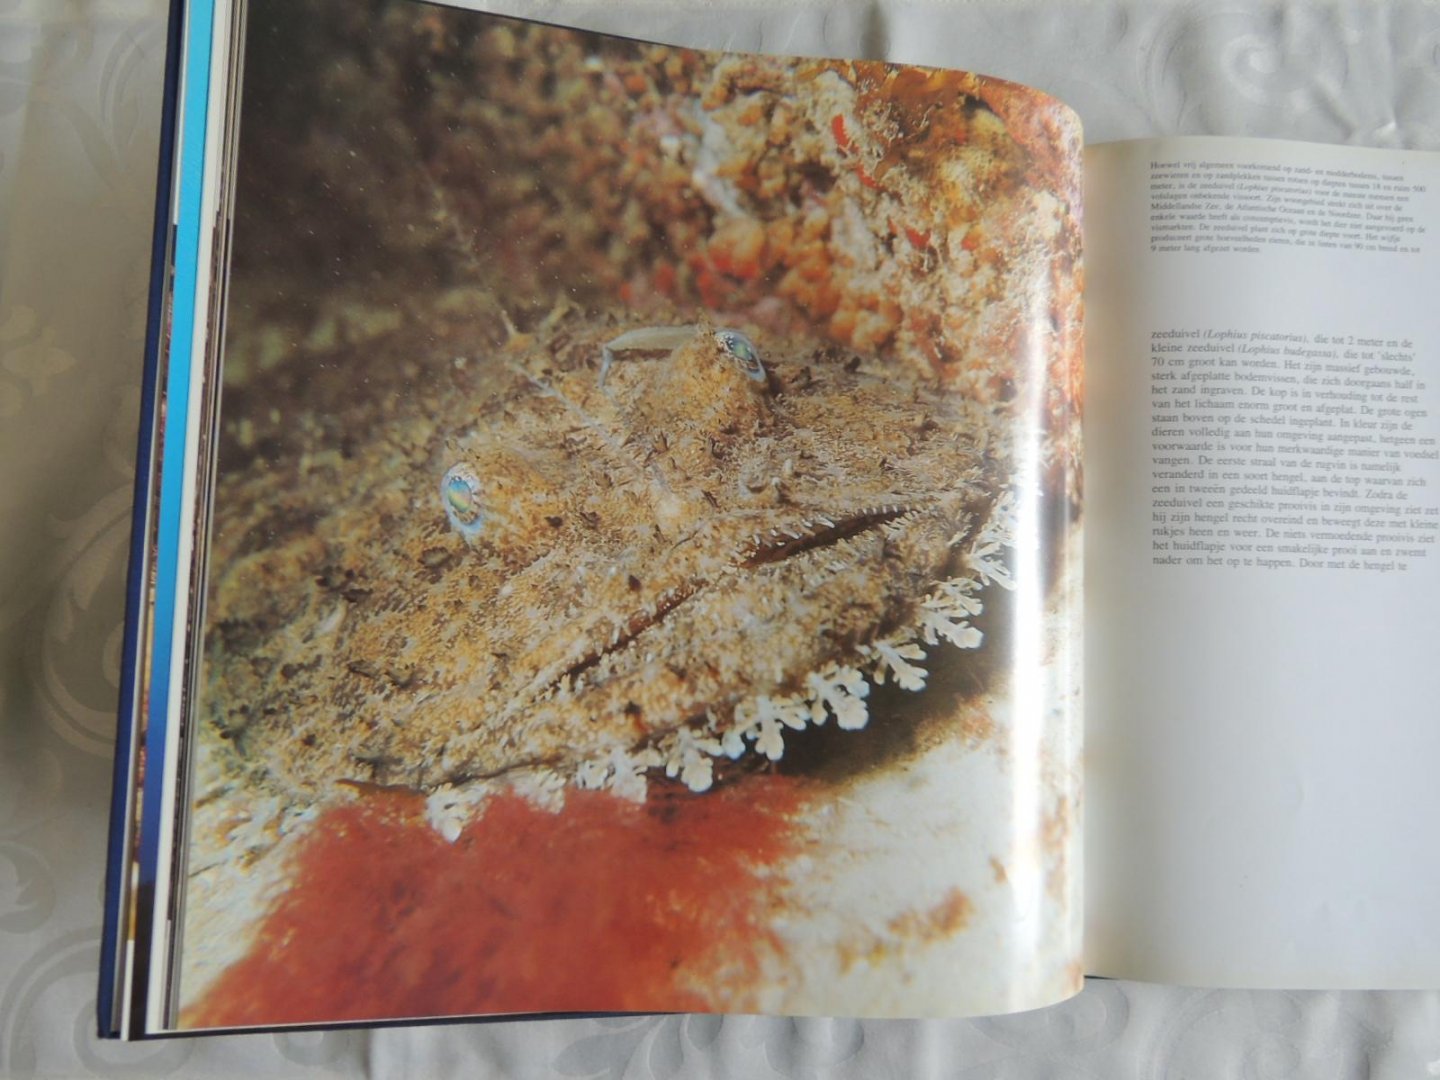 Carl Roessler - graaf frank de - The Underwater Wilderness: Life Around the Great Reefs - Leven onder Water, van frank de graaf GRATIS ERBIJ